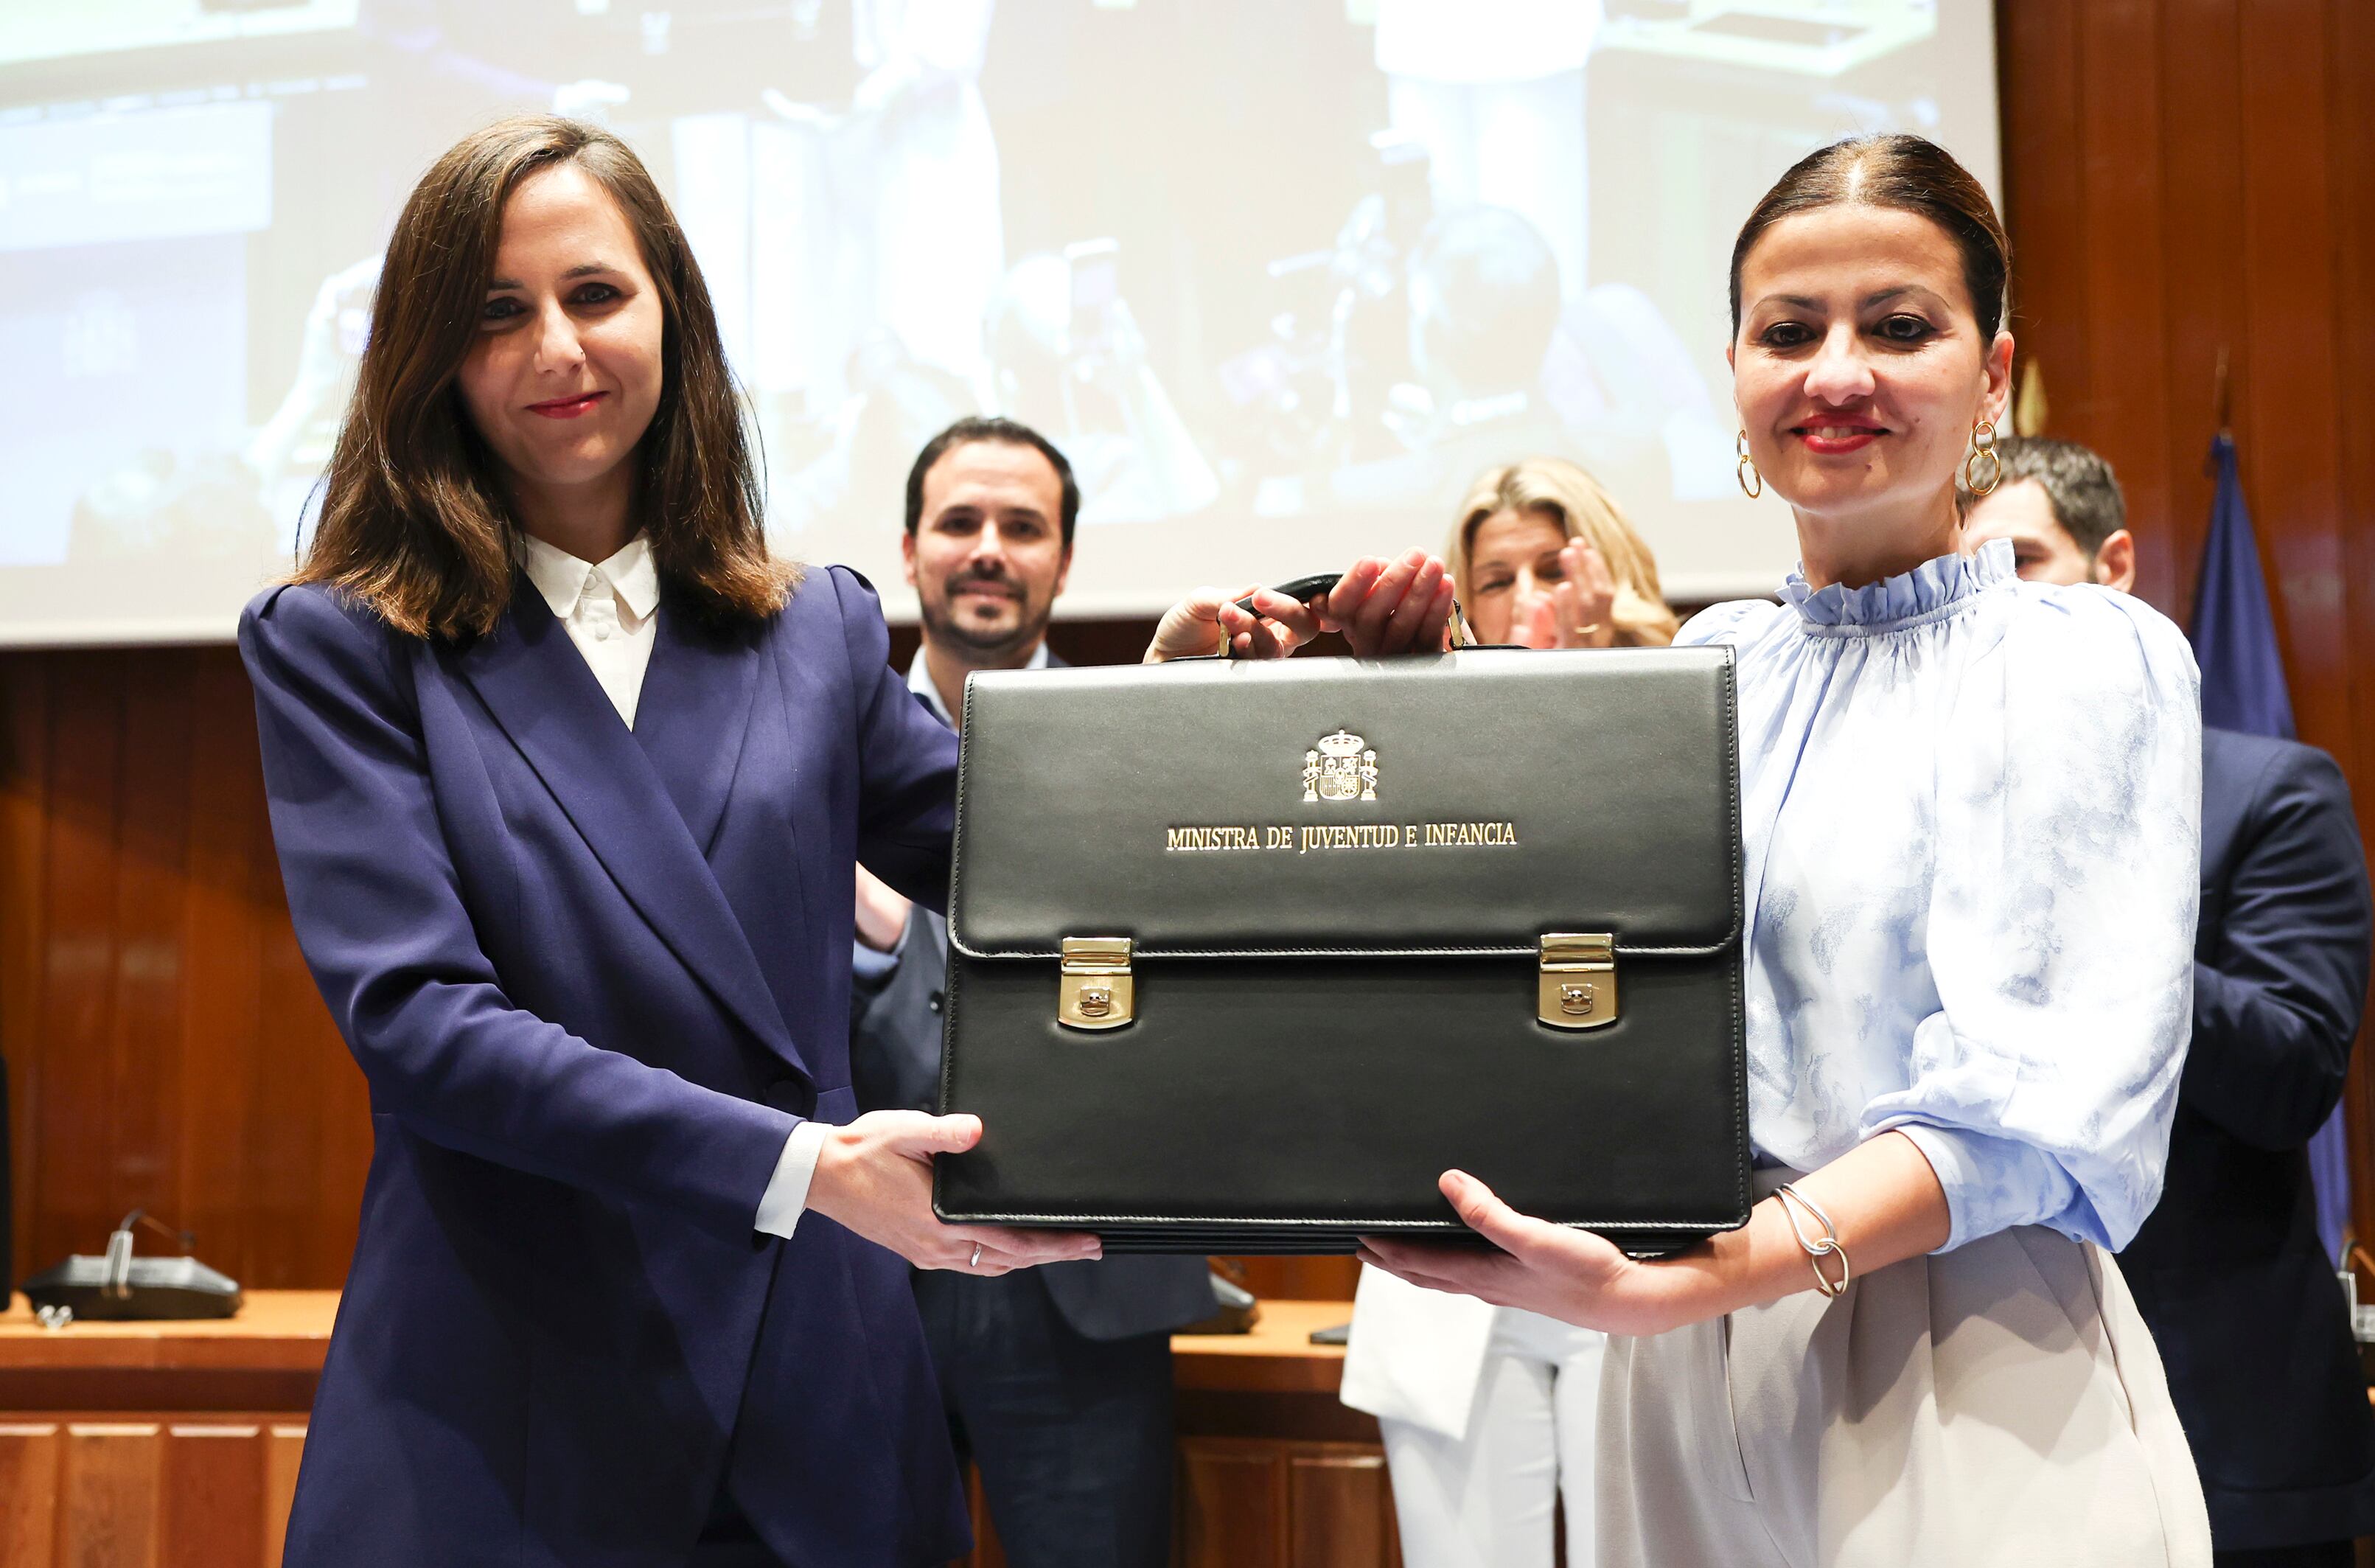 La nueva ministra de Infancia y Juventud, Sira Rego (a la derecha), recibe la cartera de manos de la exministra Ione Belarra, tras tomar posesión de su cargo este martes en la sede del ministerio, en Madrid.